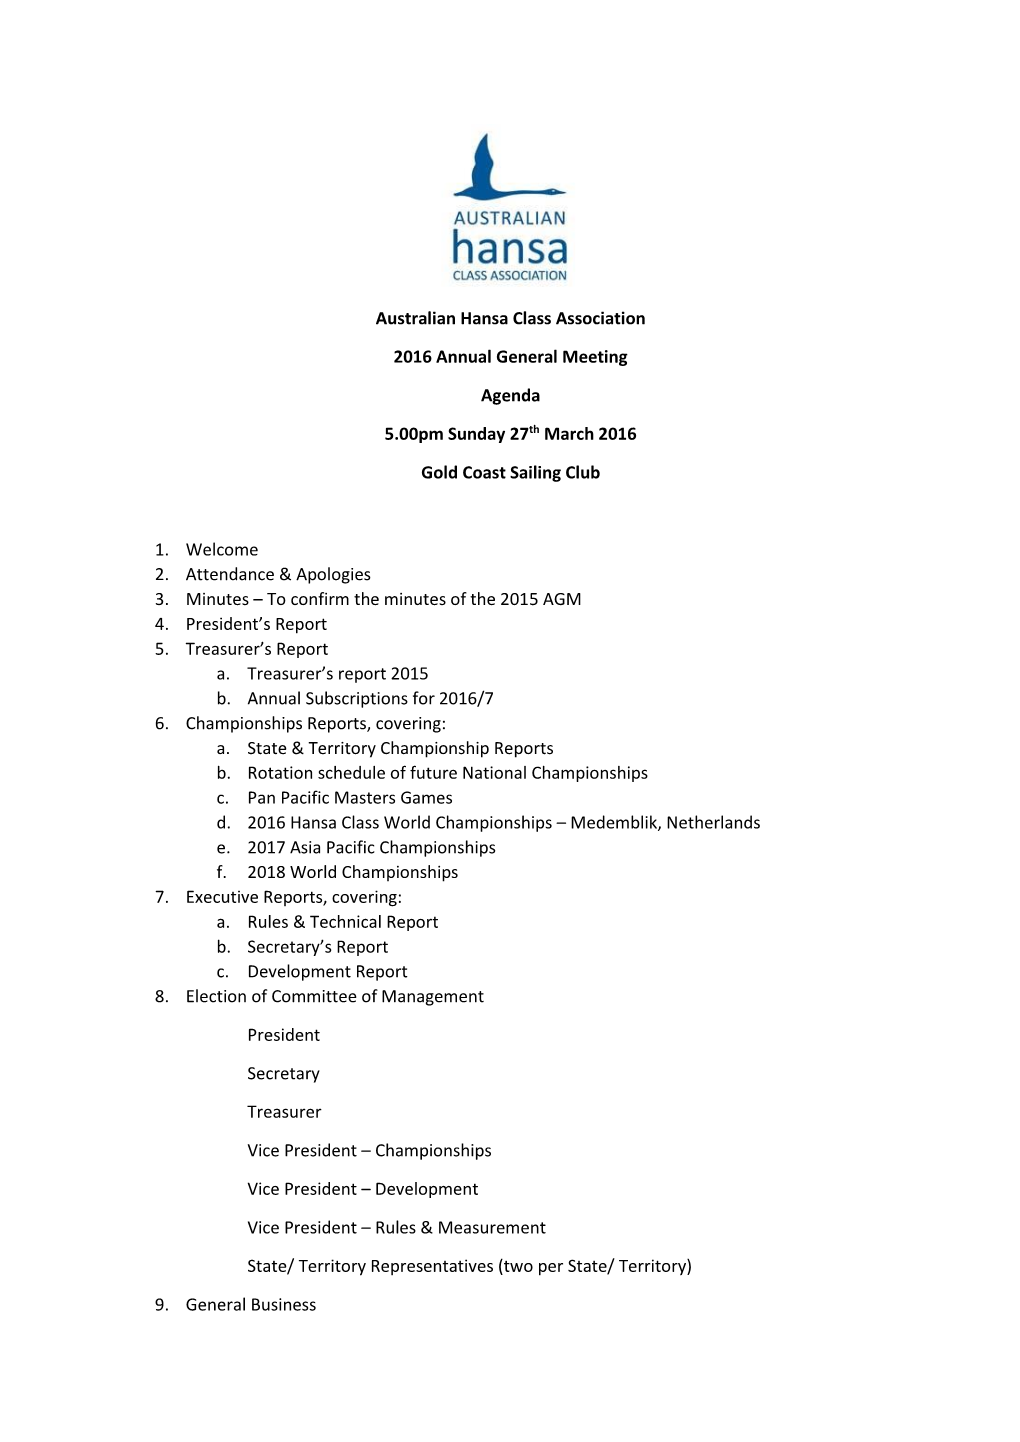 Australian Hansa Class Association 2016 Annual General Meeting